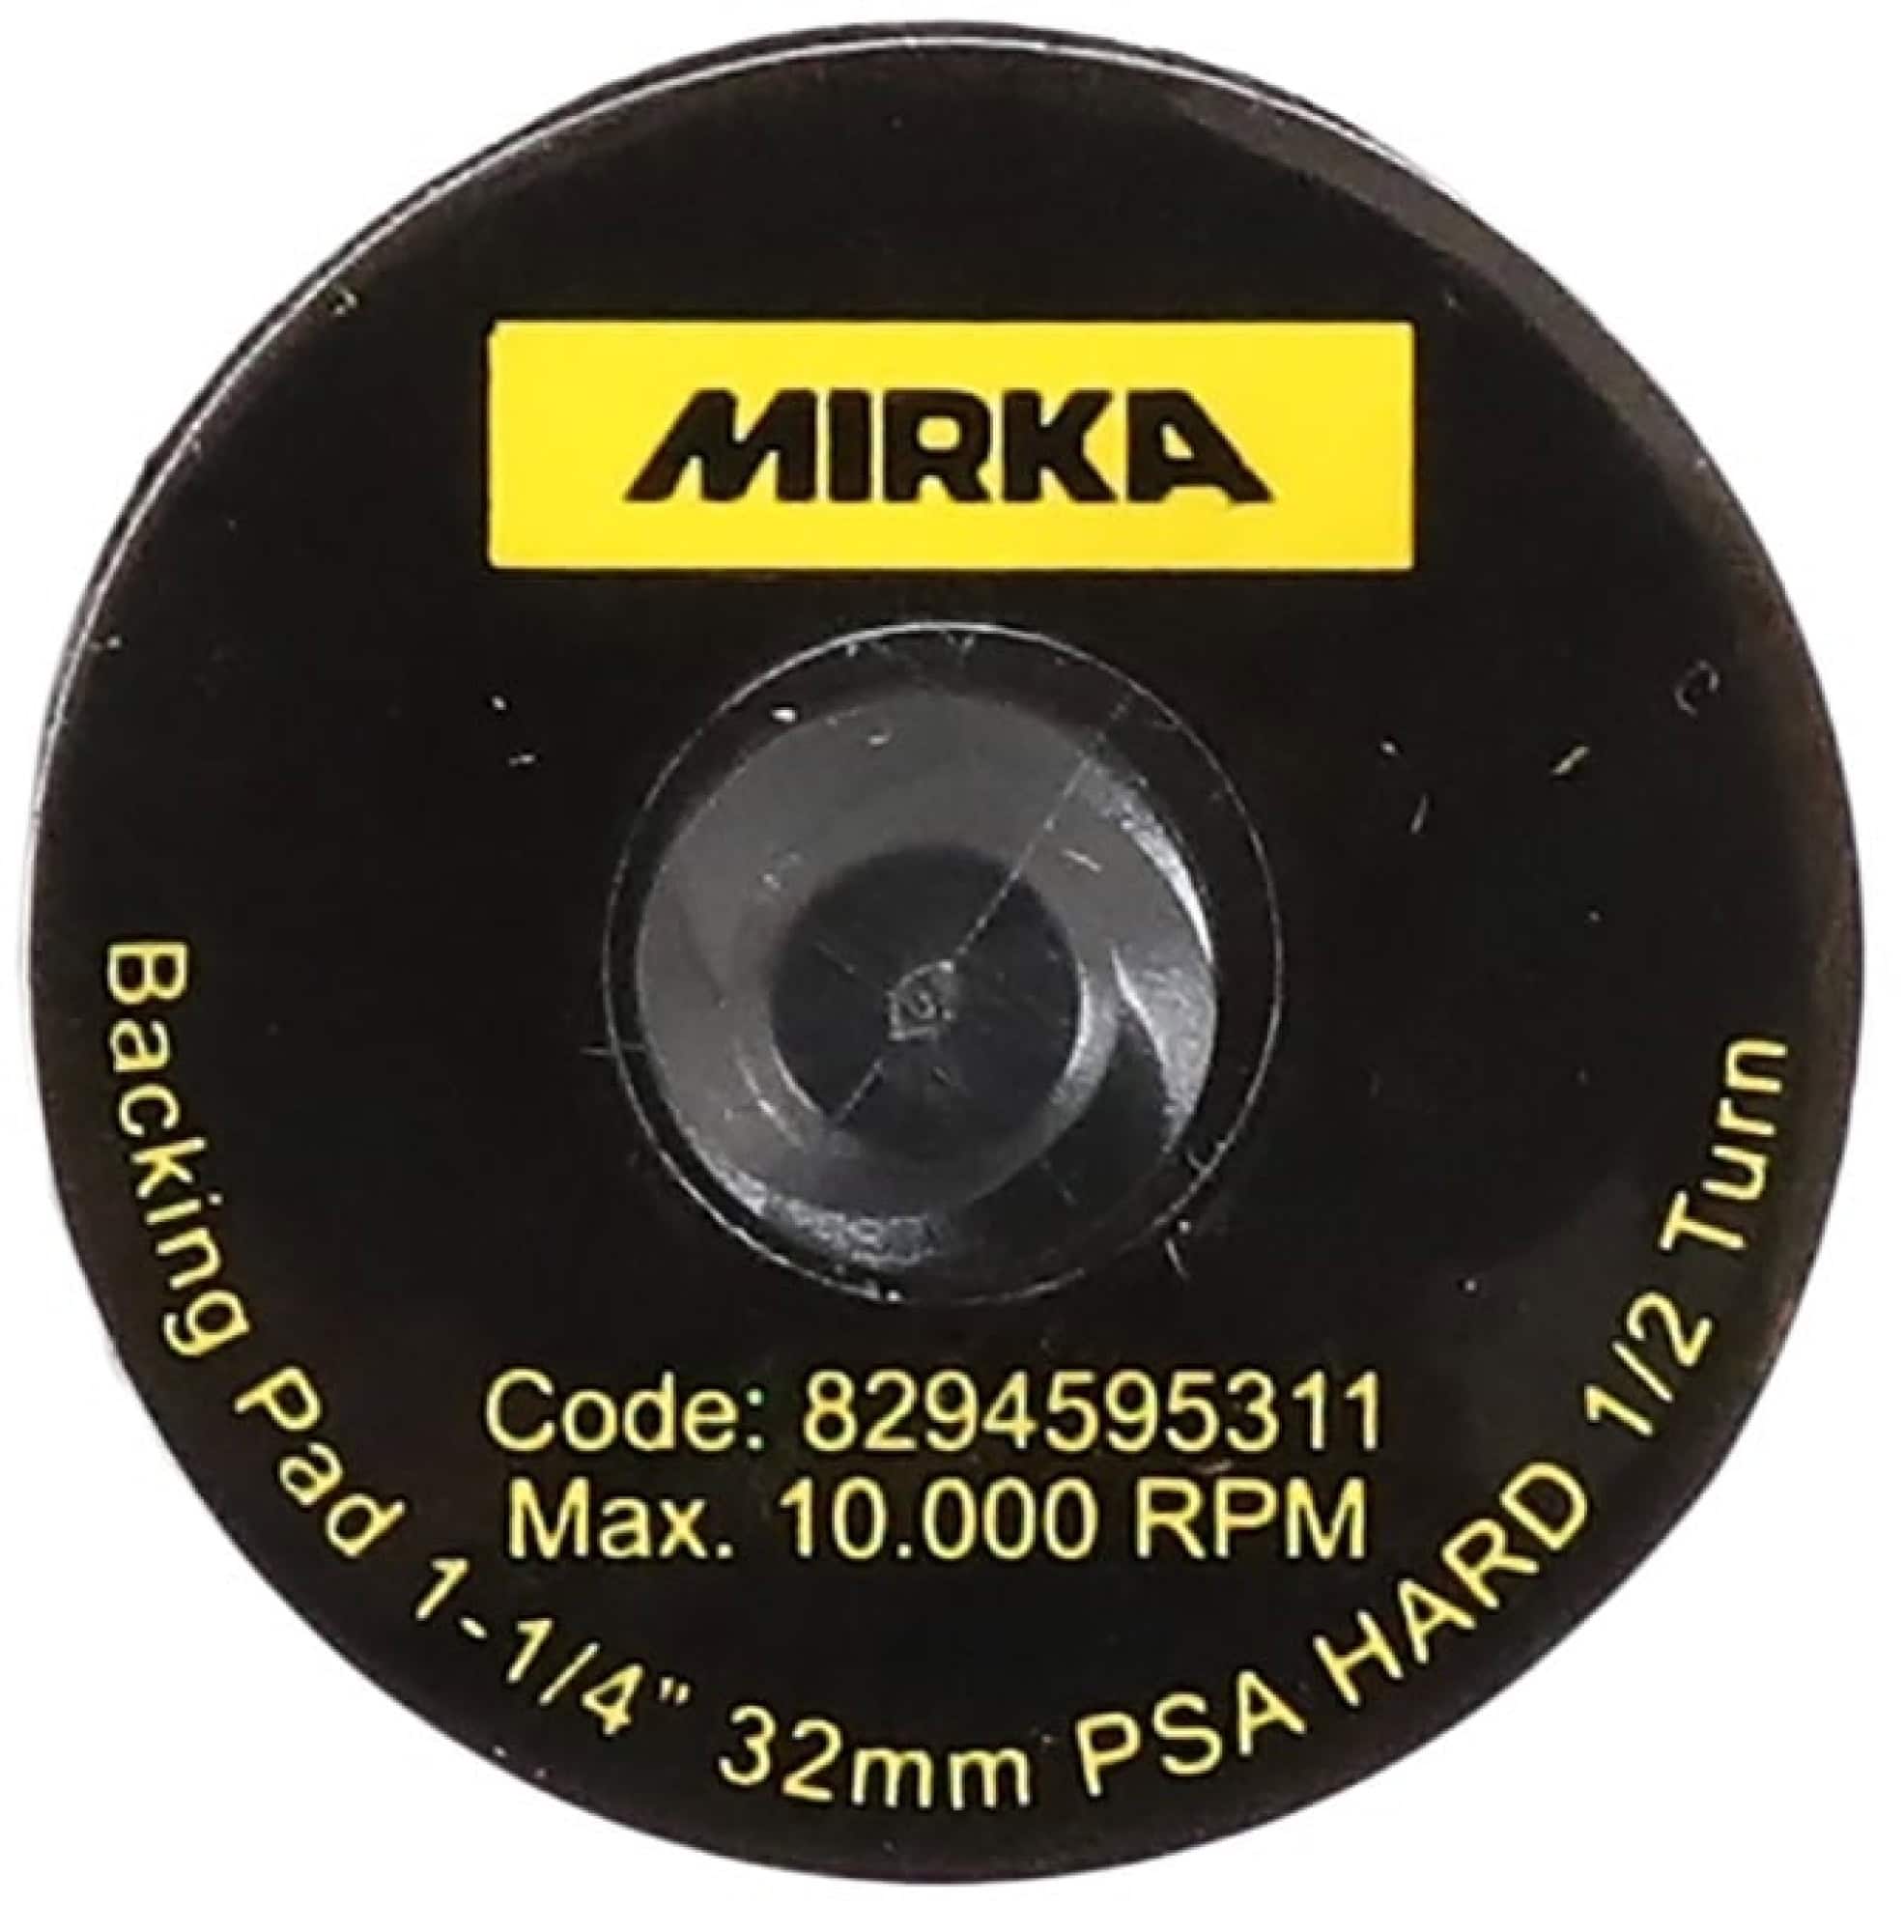 Mirka® Quick Lock Schleifteller 8294595311, Ø 32 mm, Ungelocht, Klebefilmhaftend, Hart